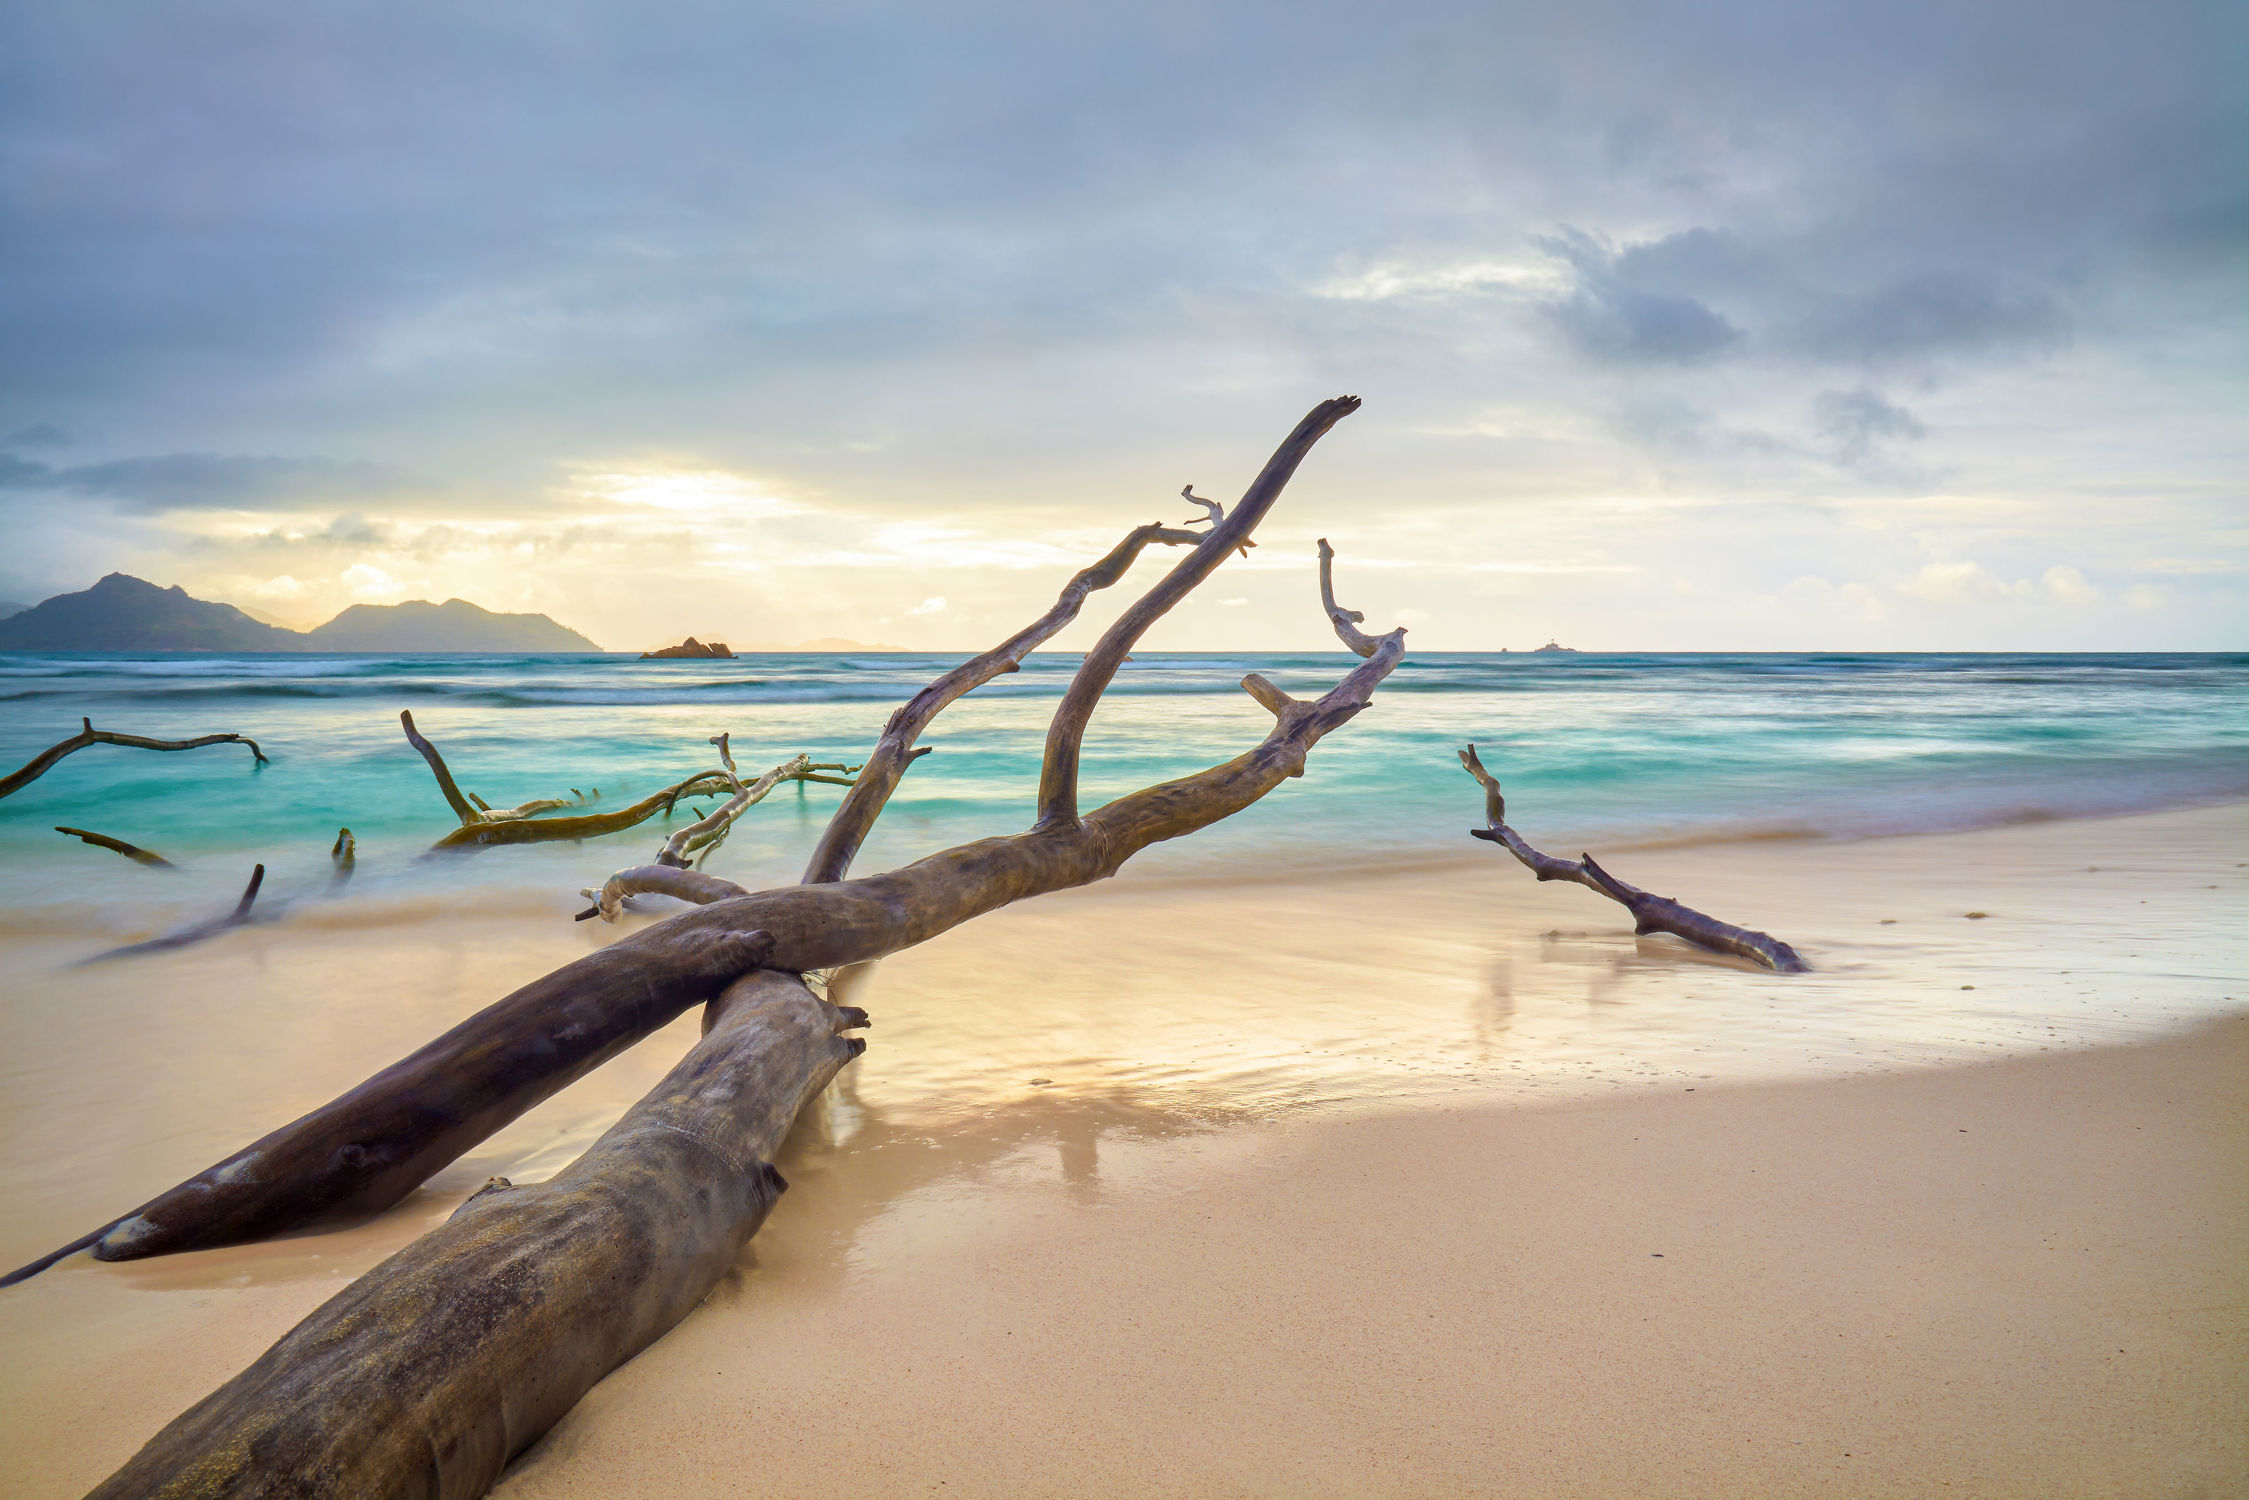 Bild mit Wetter, Sand, Urlaub, Baum, Strand, Meer, Insel, Paradies, Meer und Strand, Langzeitbelichtung, la digue, Seychellen, Gezeiten, Praslin